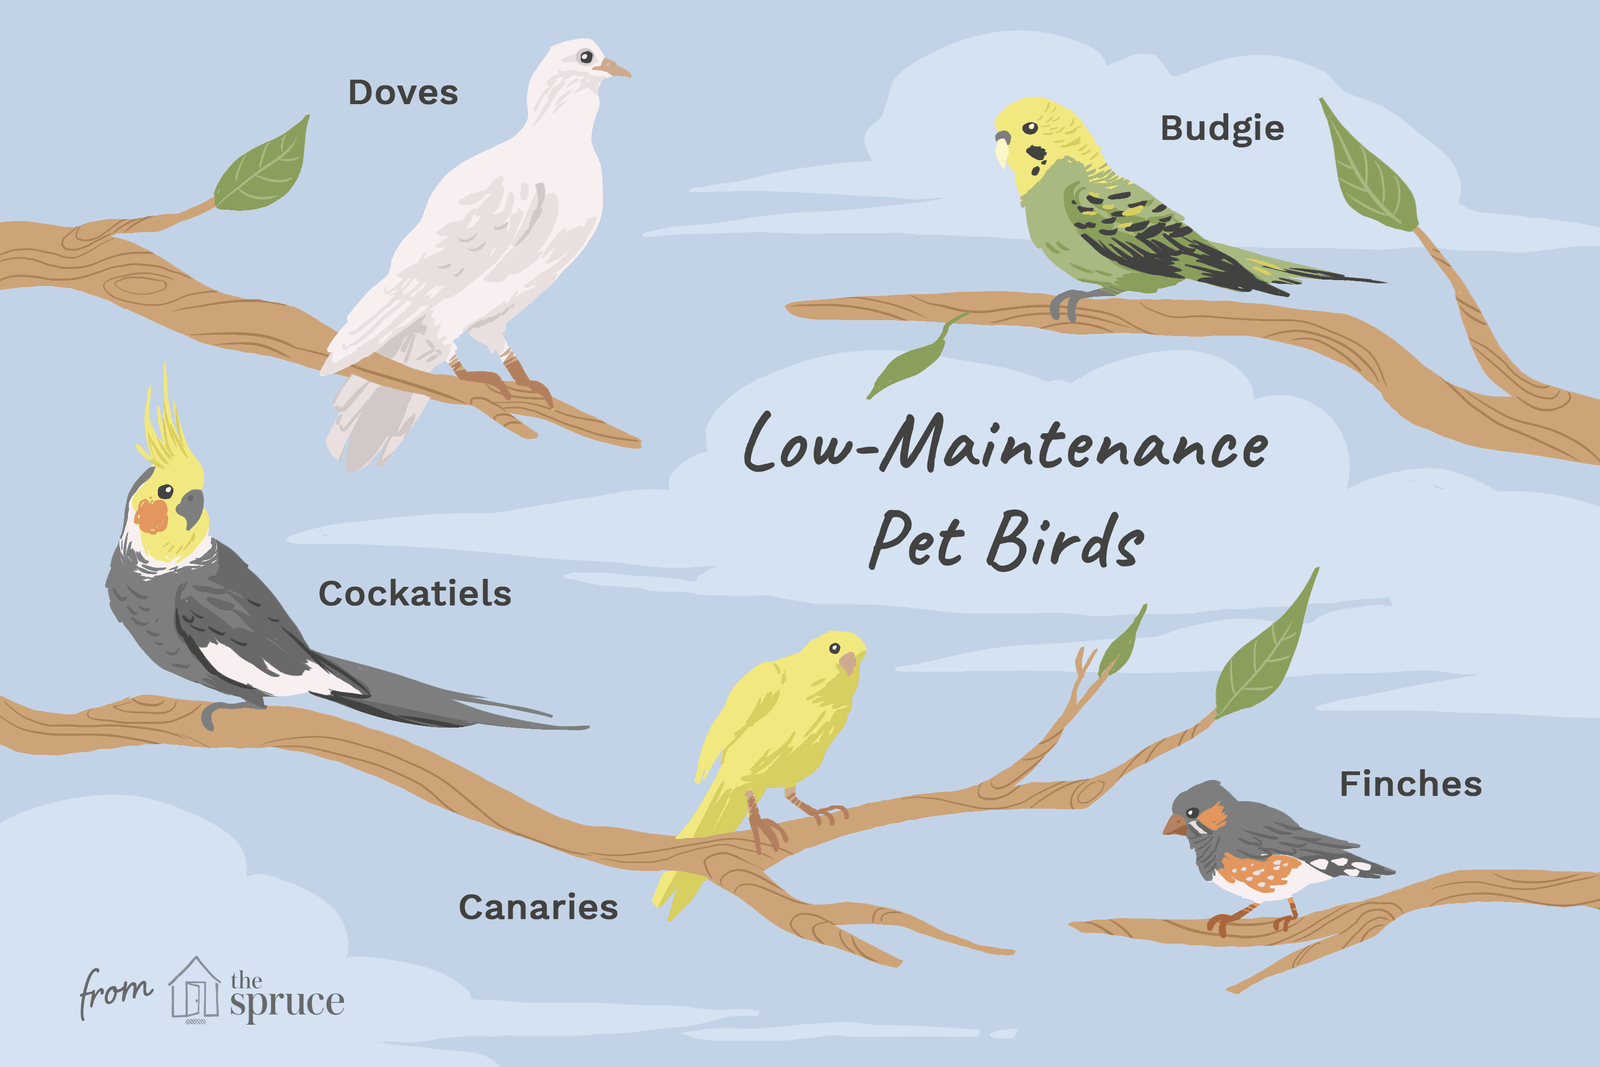 10 Top Low-Maintenance Pet Bird Species